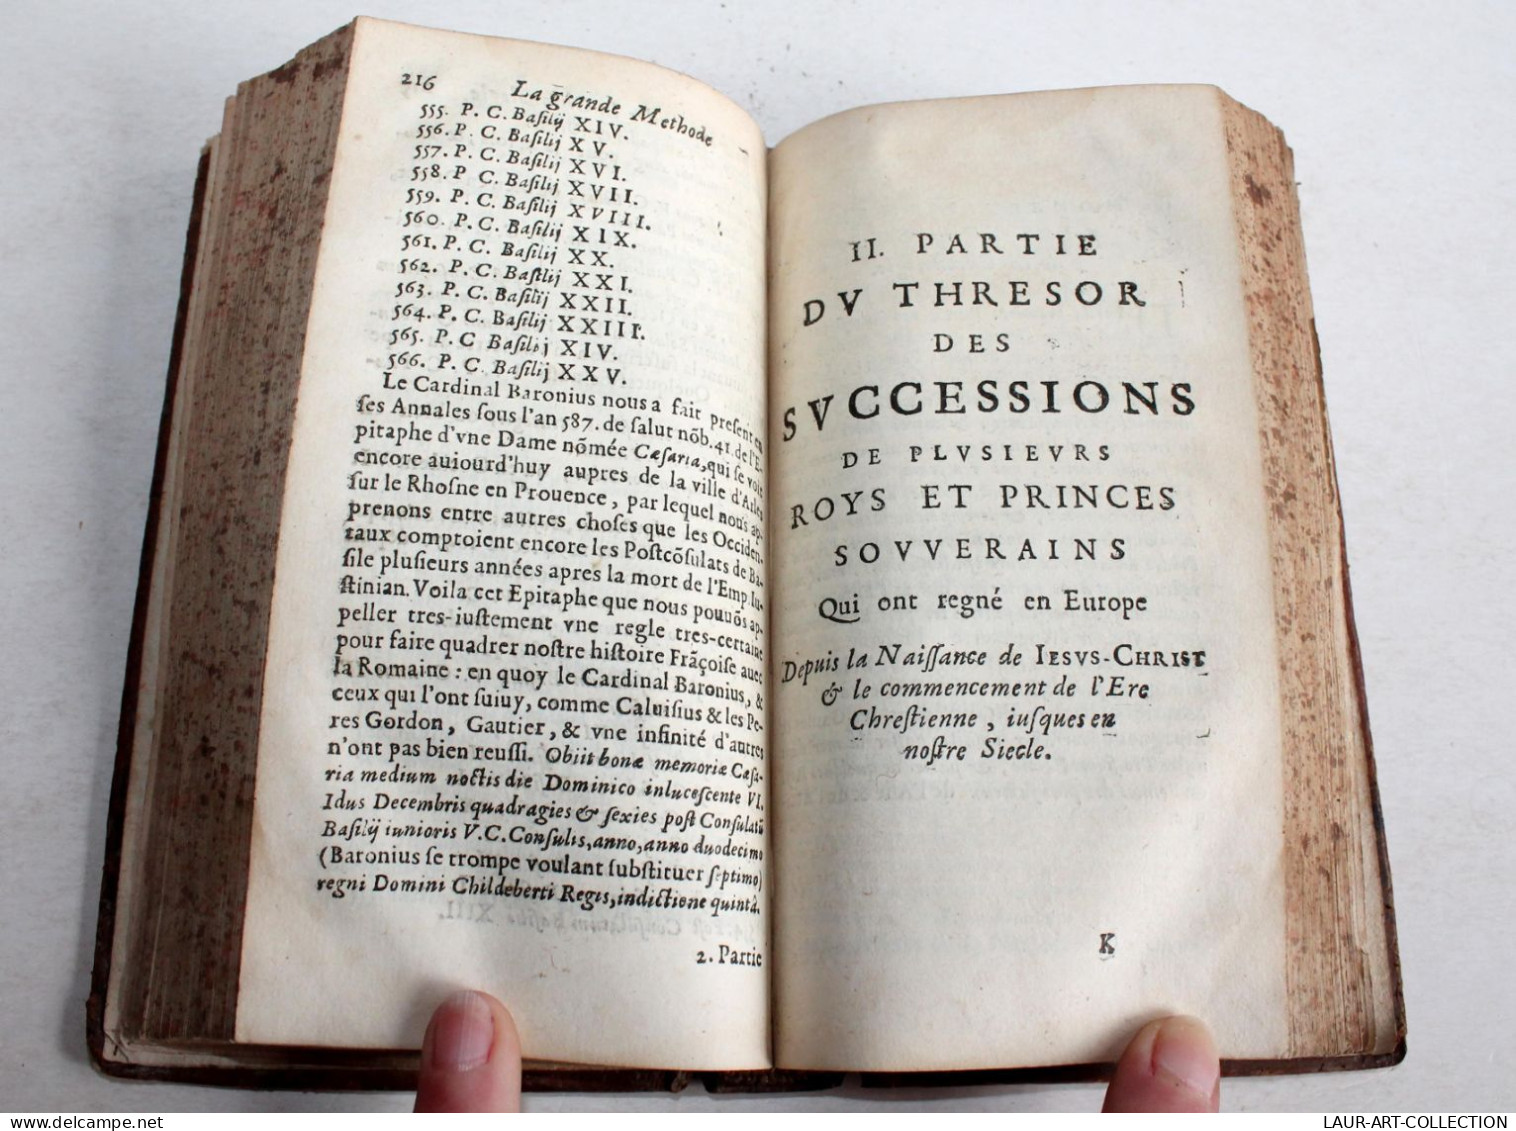 RARE 1664 GRANDE ET PETITE METHODE APPRENDRE LA CHRONOLOGIE & L'HISTOIRE Par P. LABBE ANCIEN LIVRE XVIIe SIECLE (2204.6) - Bis 1700